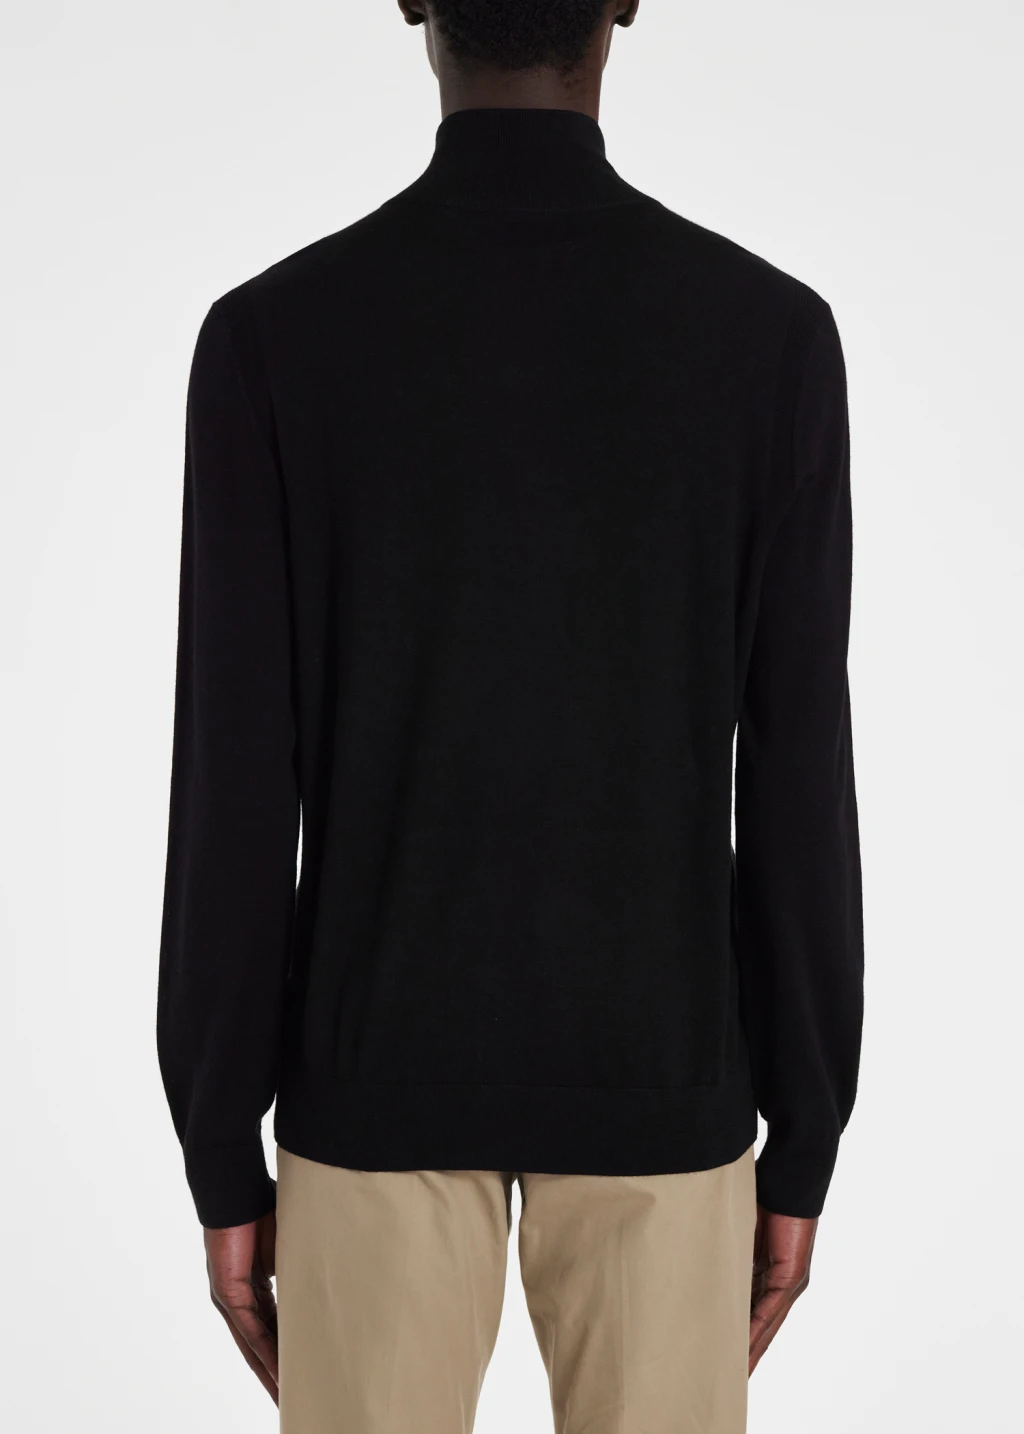 Men's Black Merino Wool Half Zip Sweater